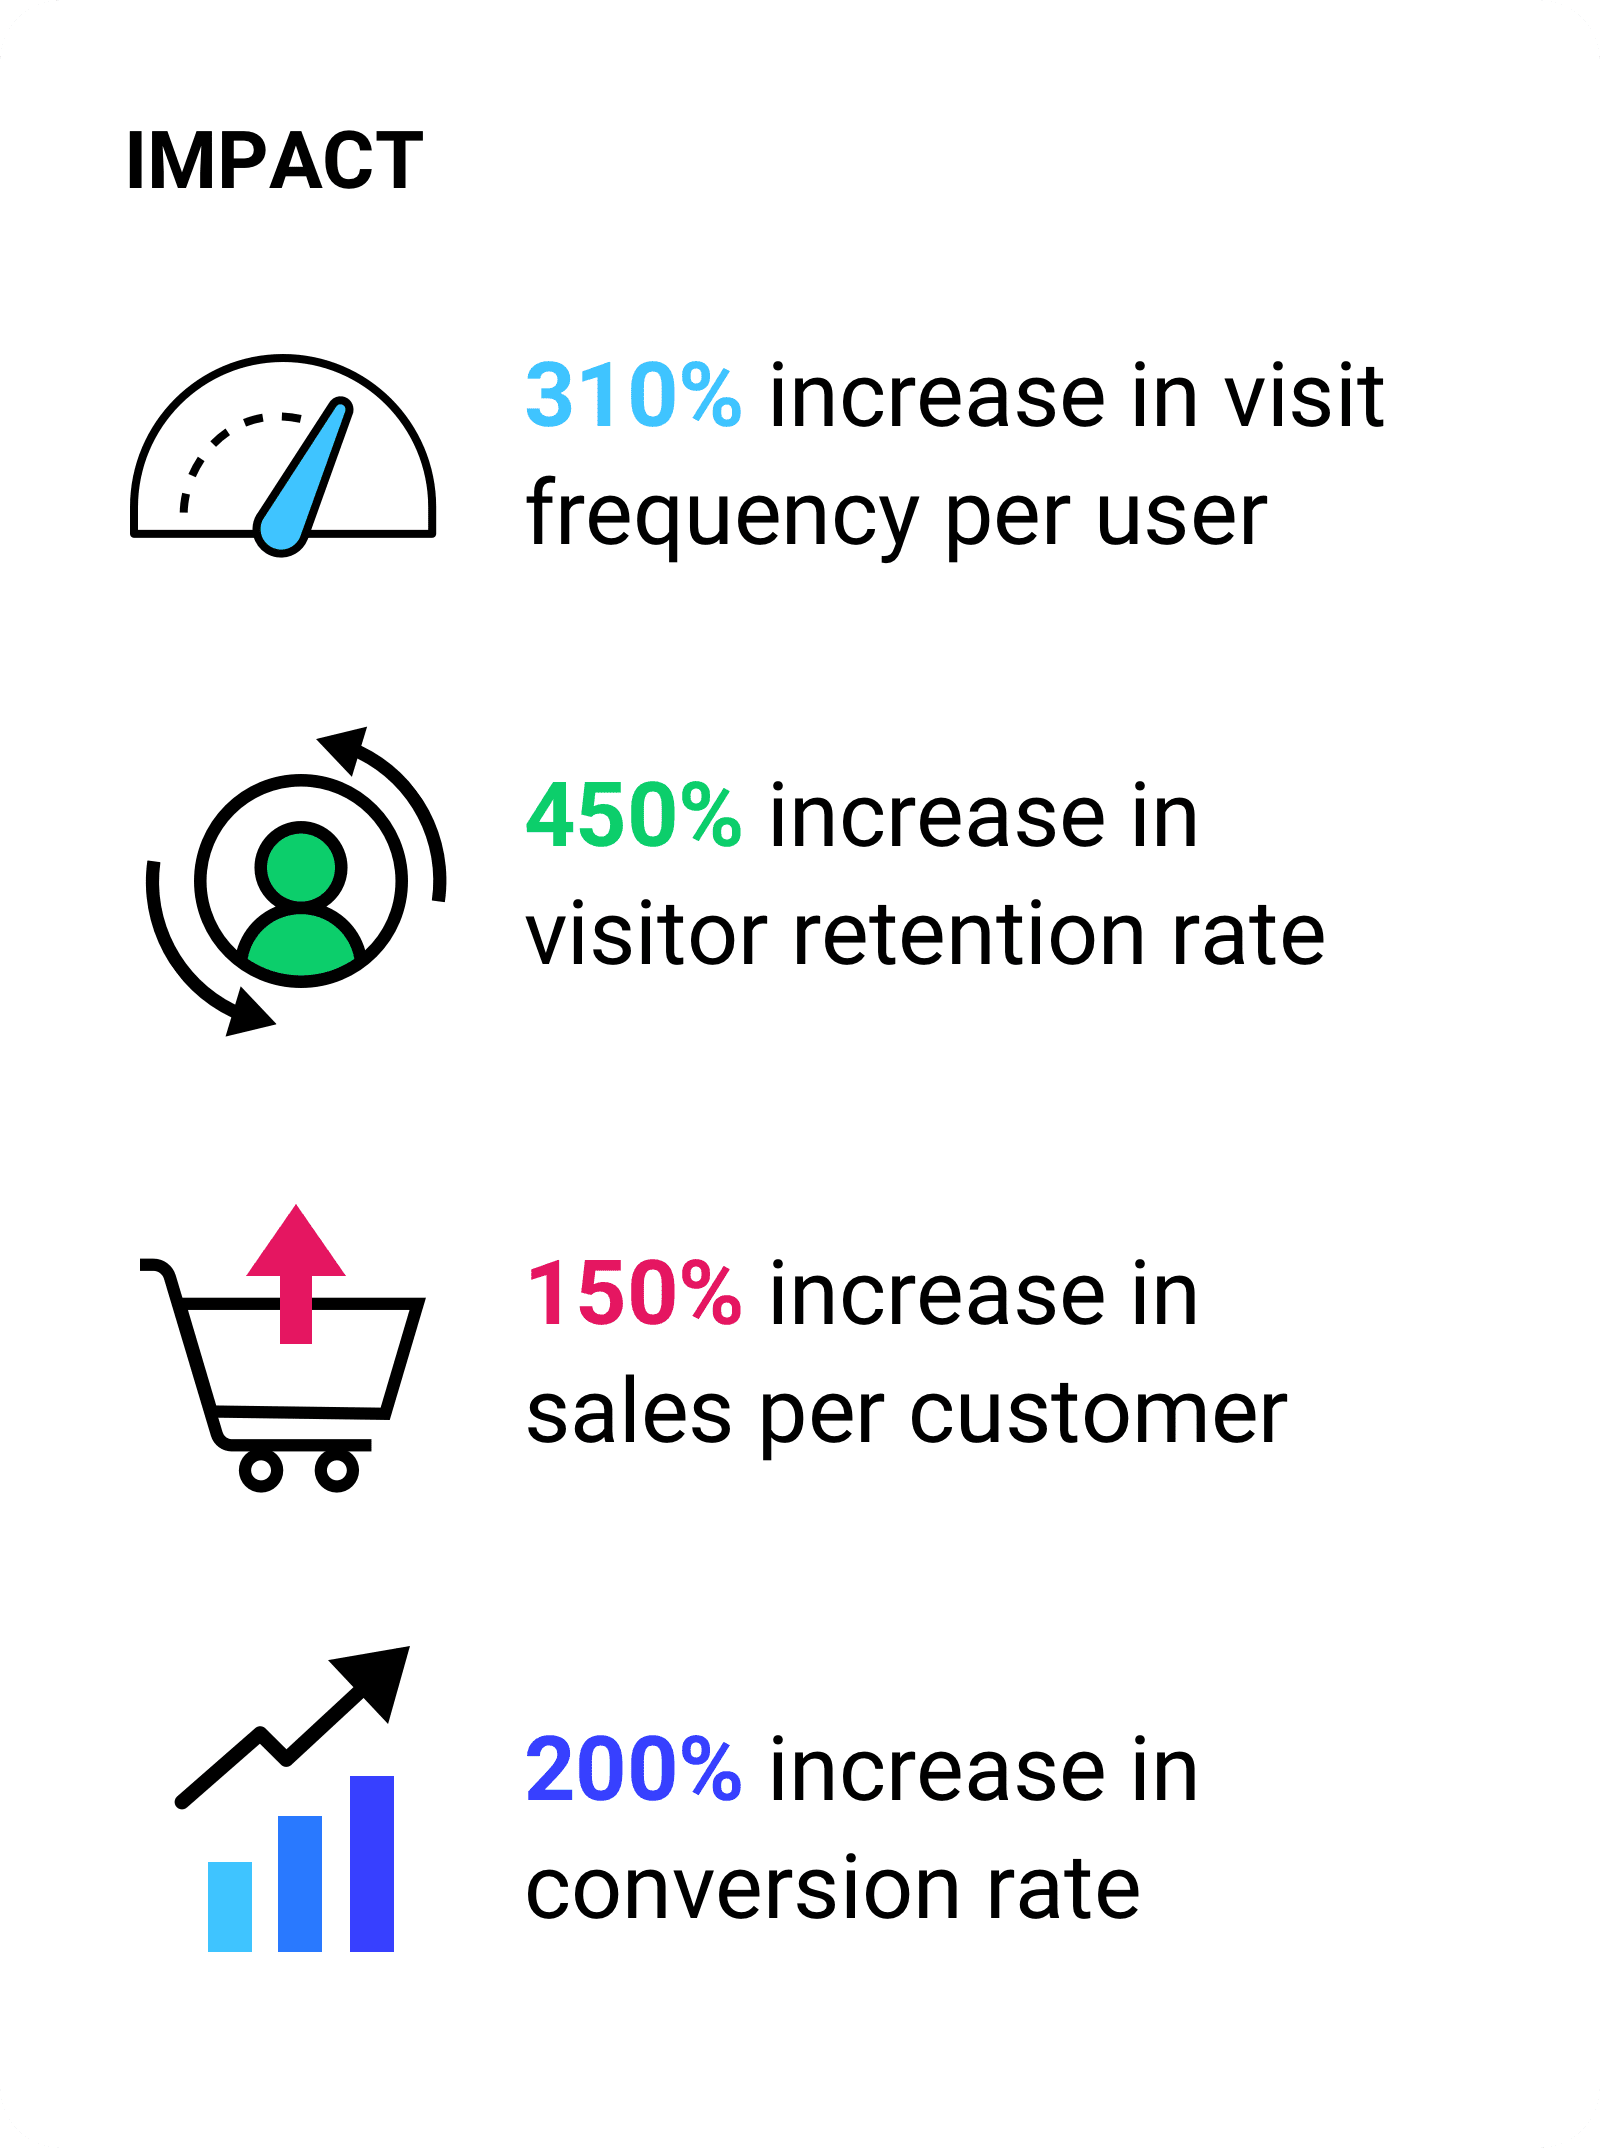 Aumento de 310% na frequência de visitas por usuário.  450% de aumento na taxa de retenção de visitantes. Aumento de 150% nas vendas por cliente, aumento de 200% na taxa de conversão.